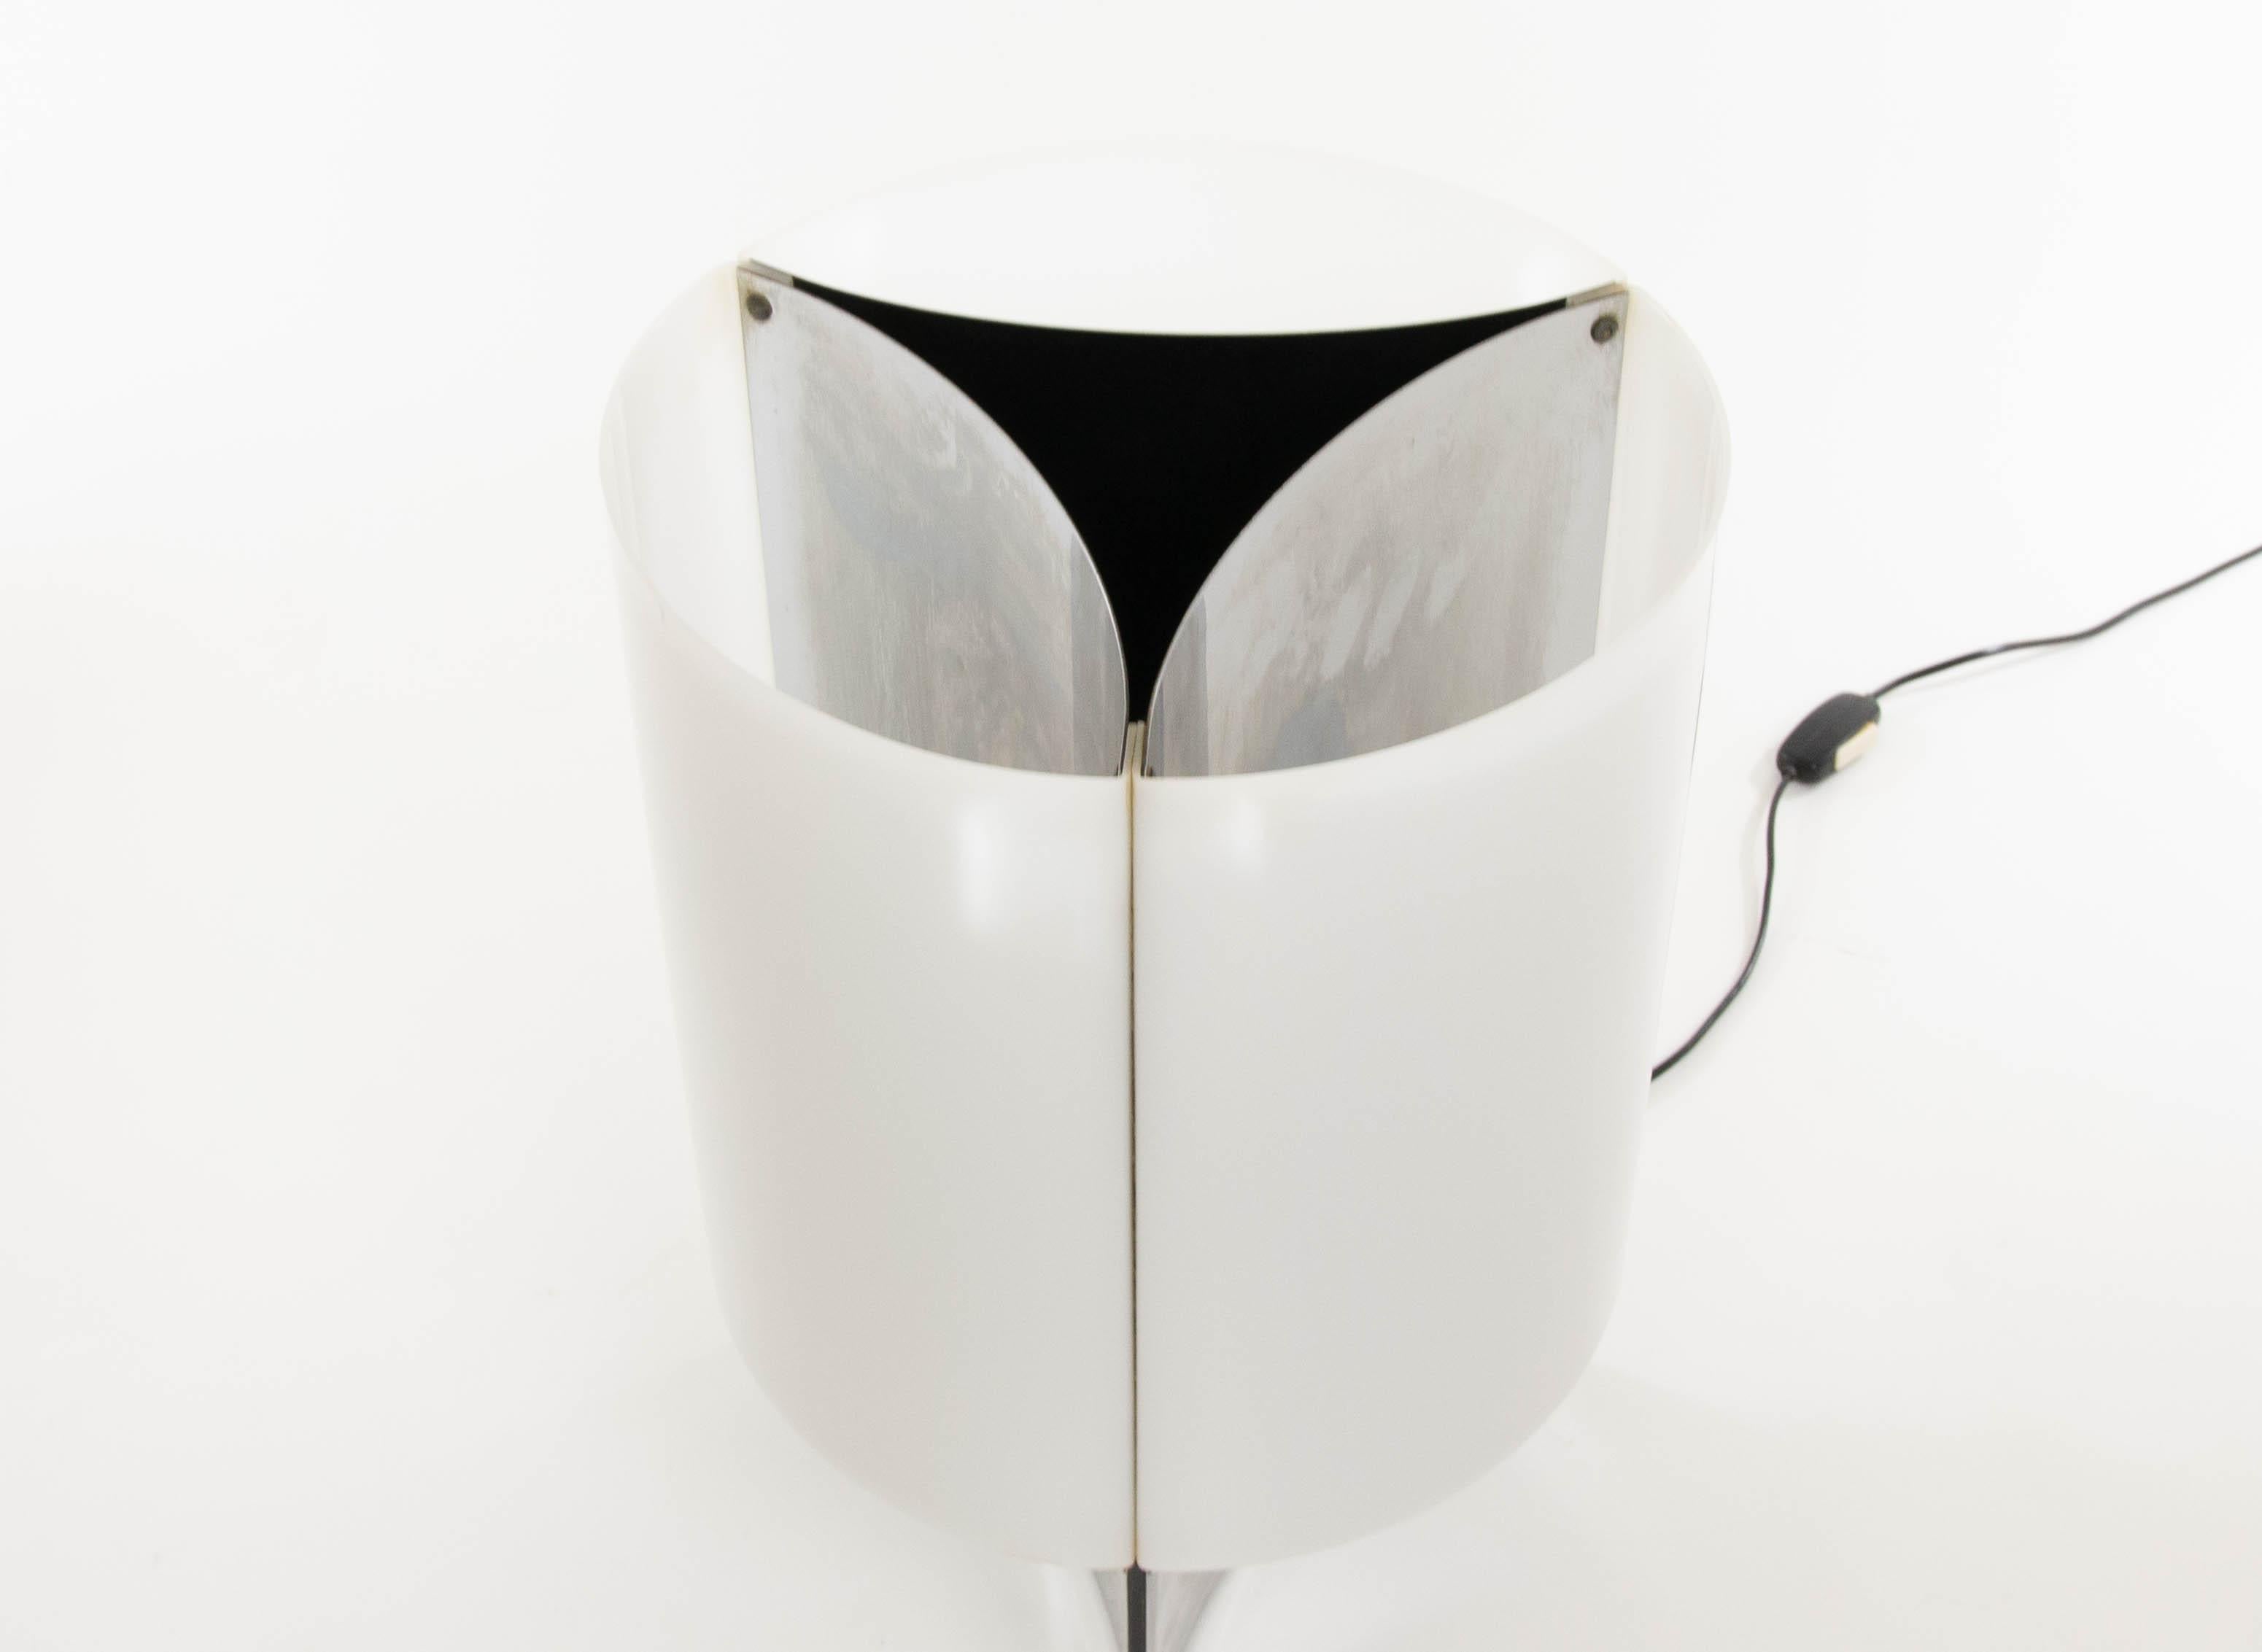 Tischlampe Modell Nr. 526 von Massimo Vignelli für Arteluce, 1965 (Mitte des 20. Jahrhunderts)